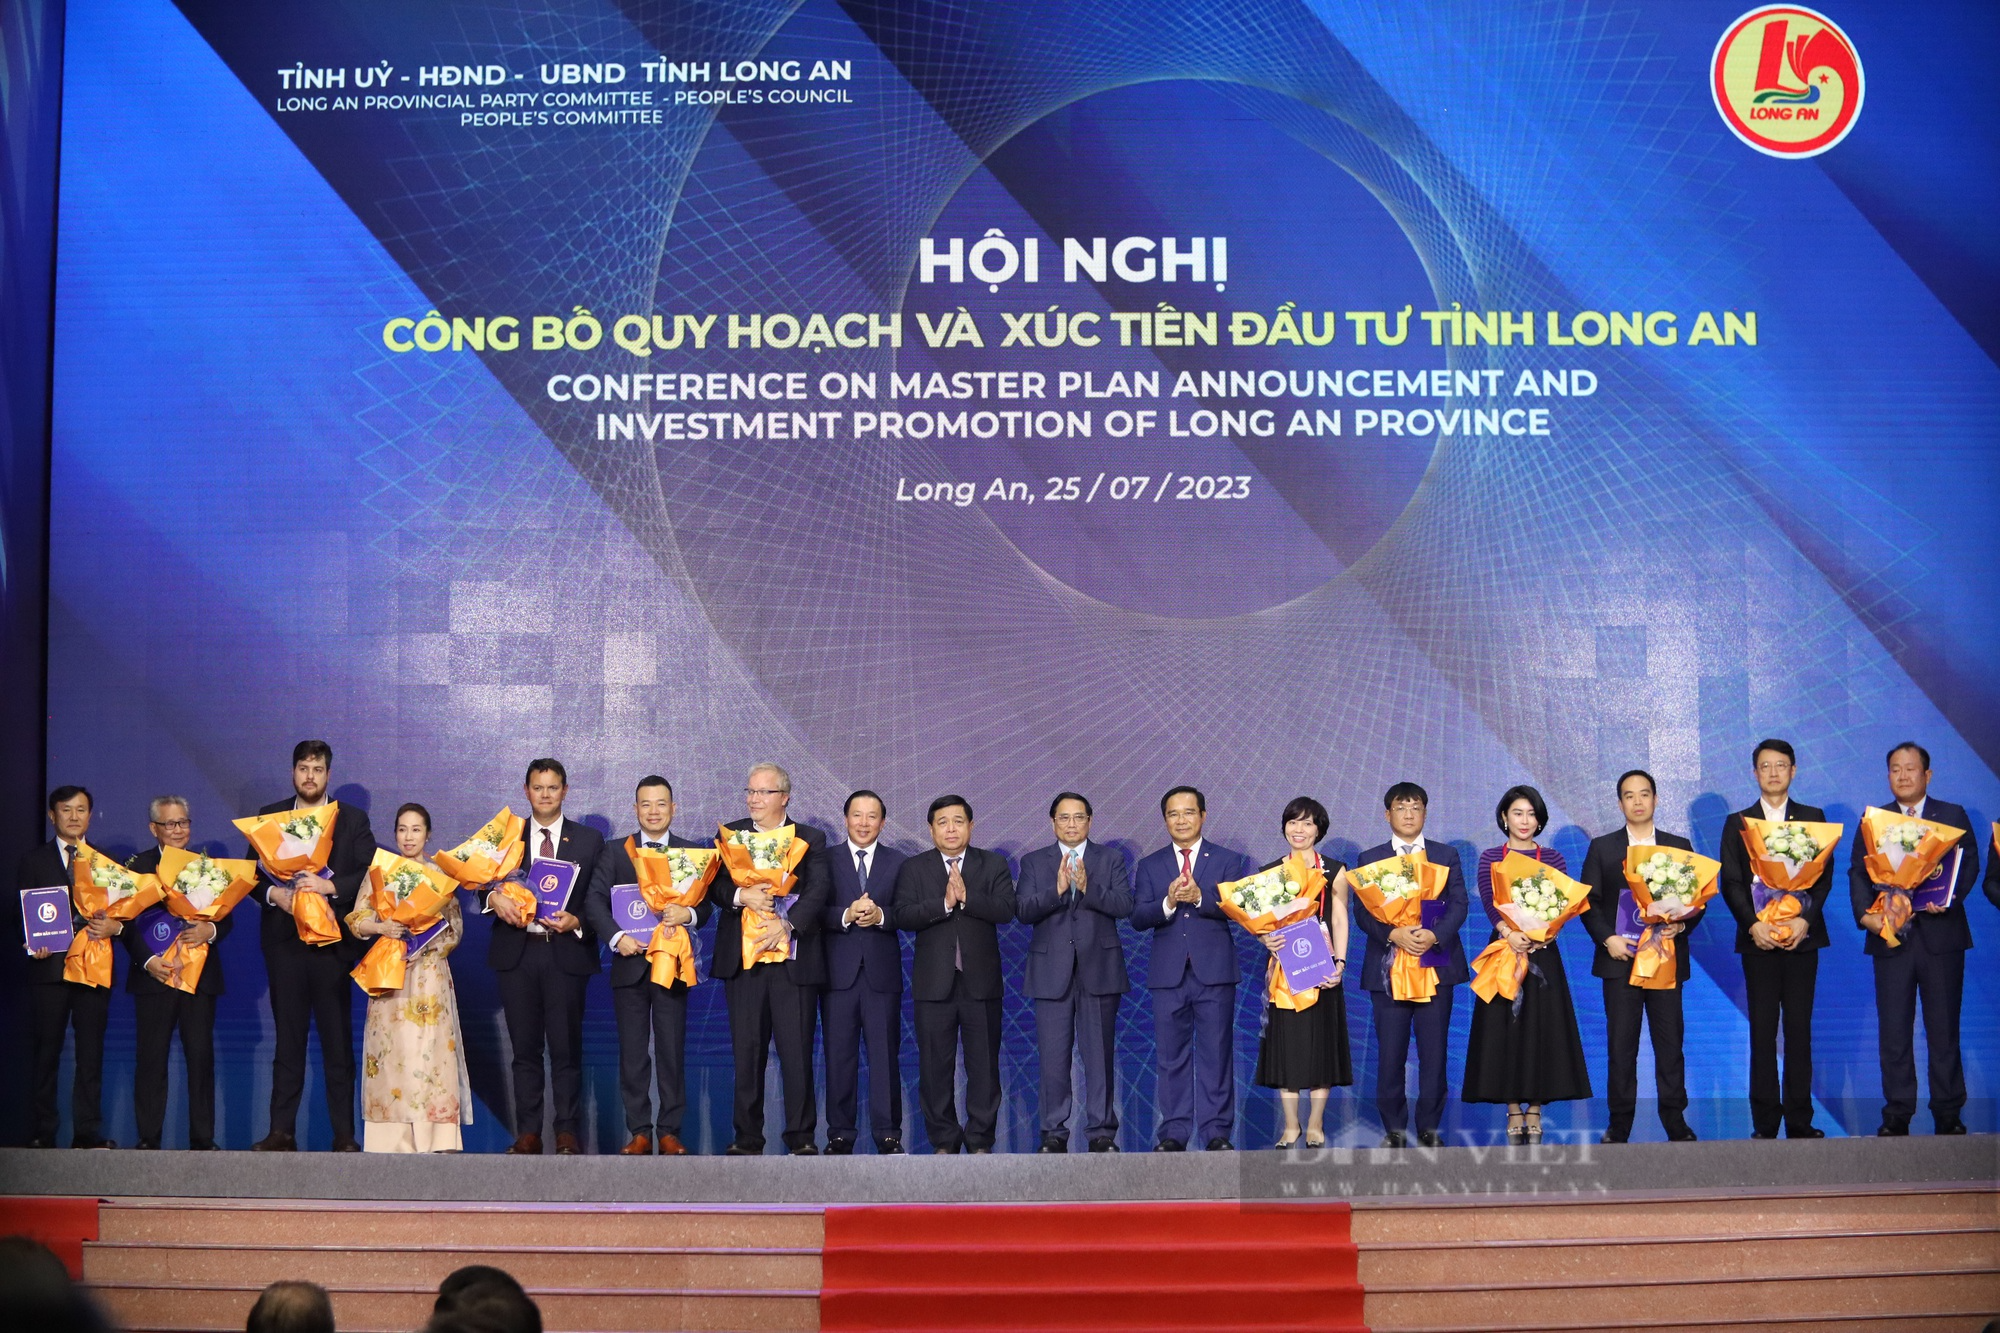 Thủ tướng chính phủ Phạm Minh Chính kỳ vọng những thế mạnh của tỉnh Long An khi công bố kế hoạch xúc tiền đầu tư - Ảnh 1.